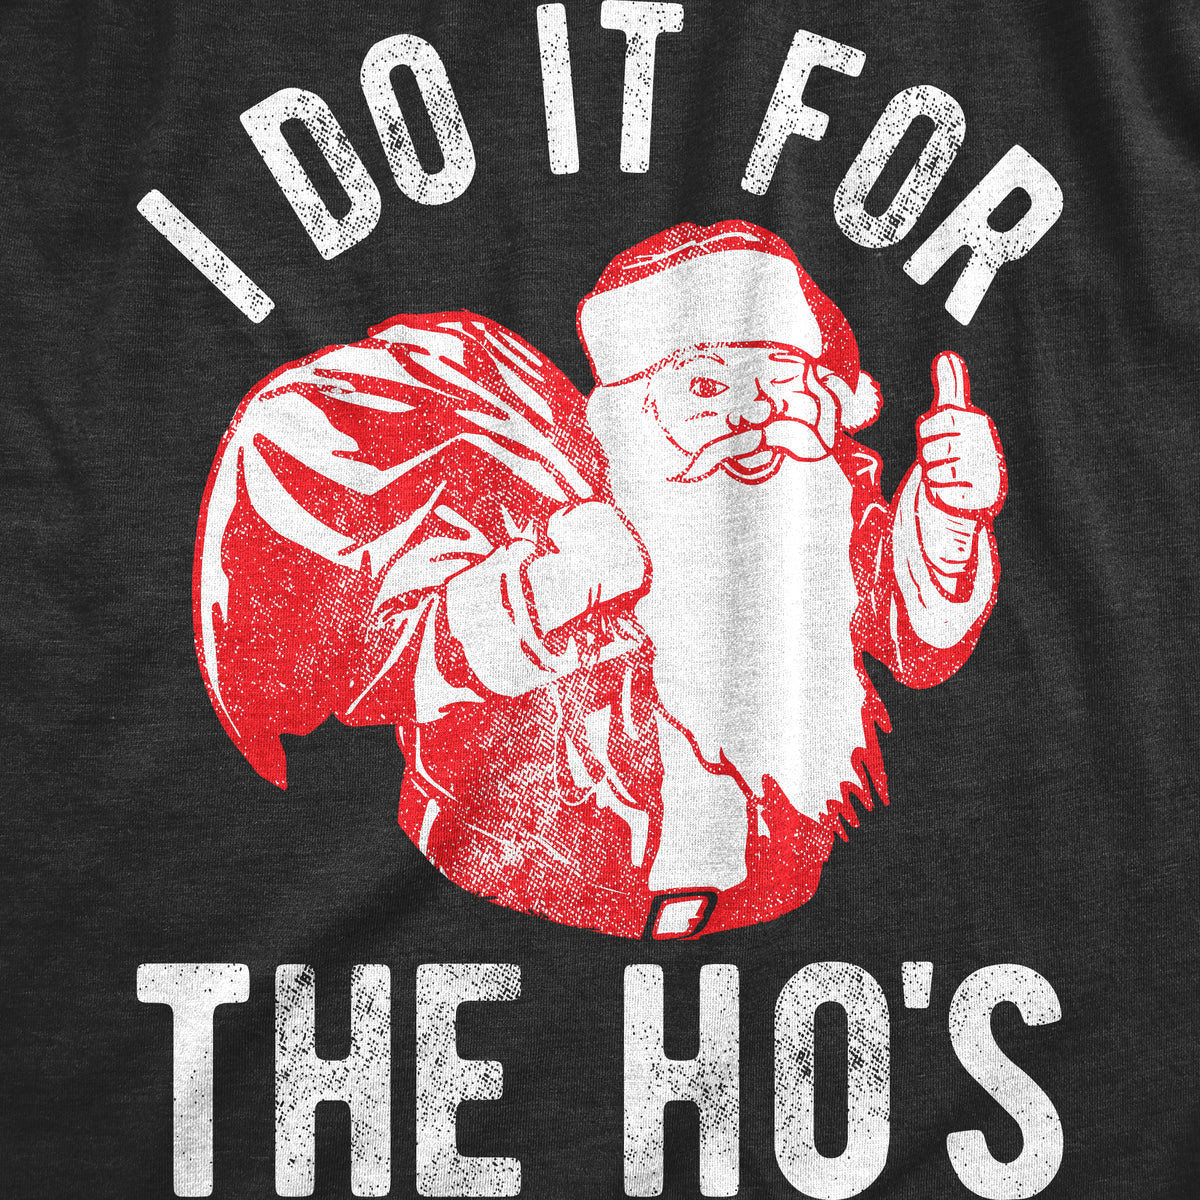 I Do It For The Ho&#39;s Men&#39;s T Shirt